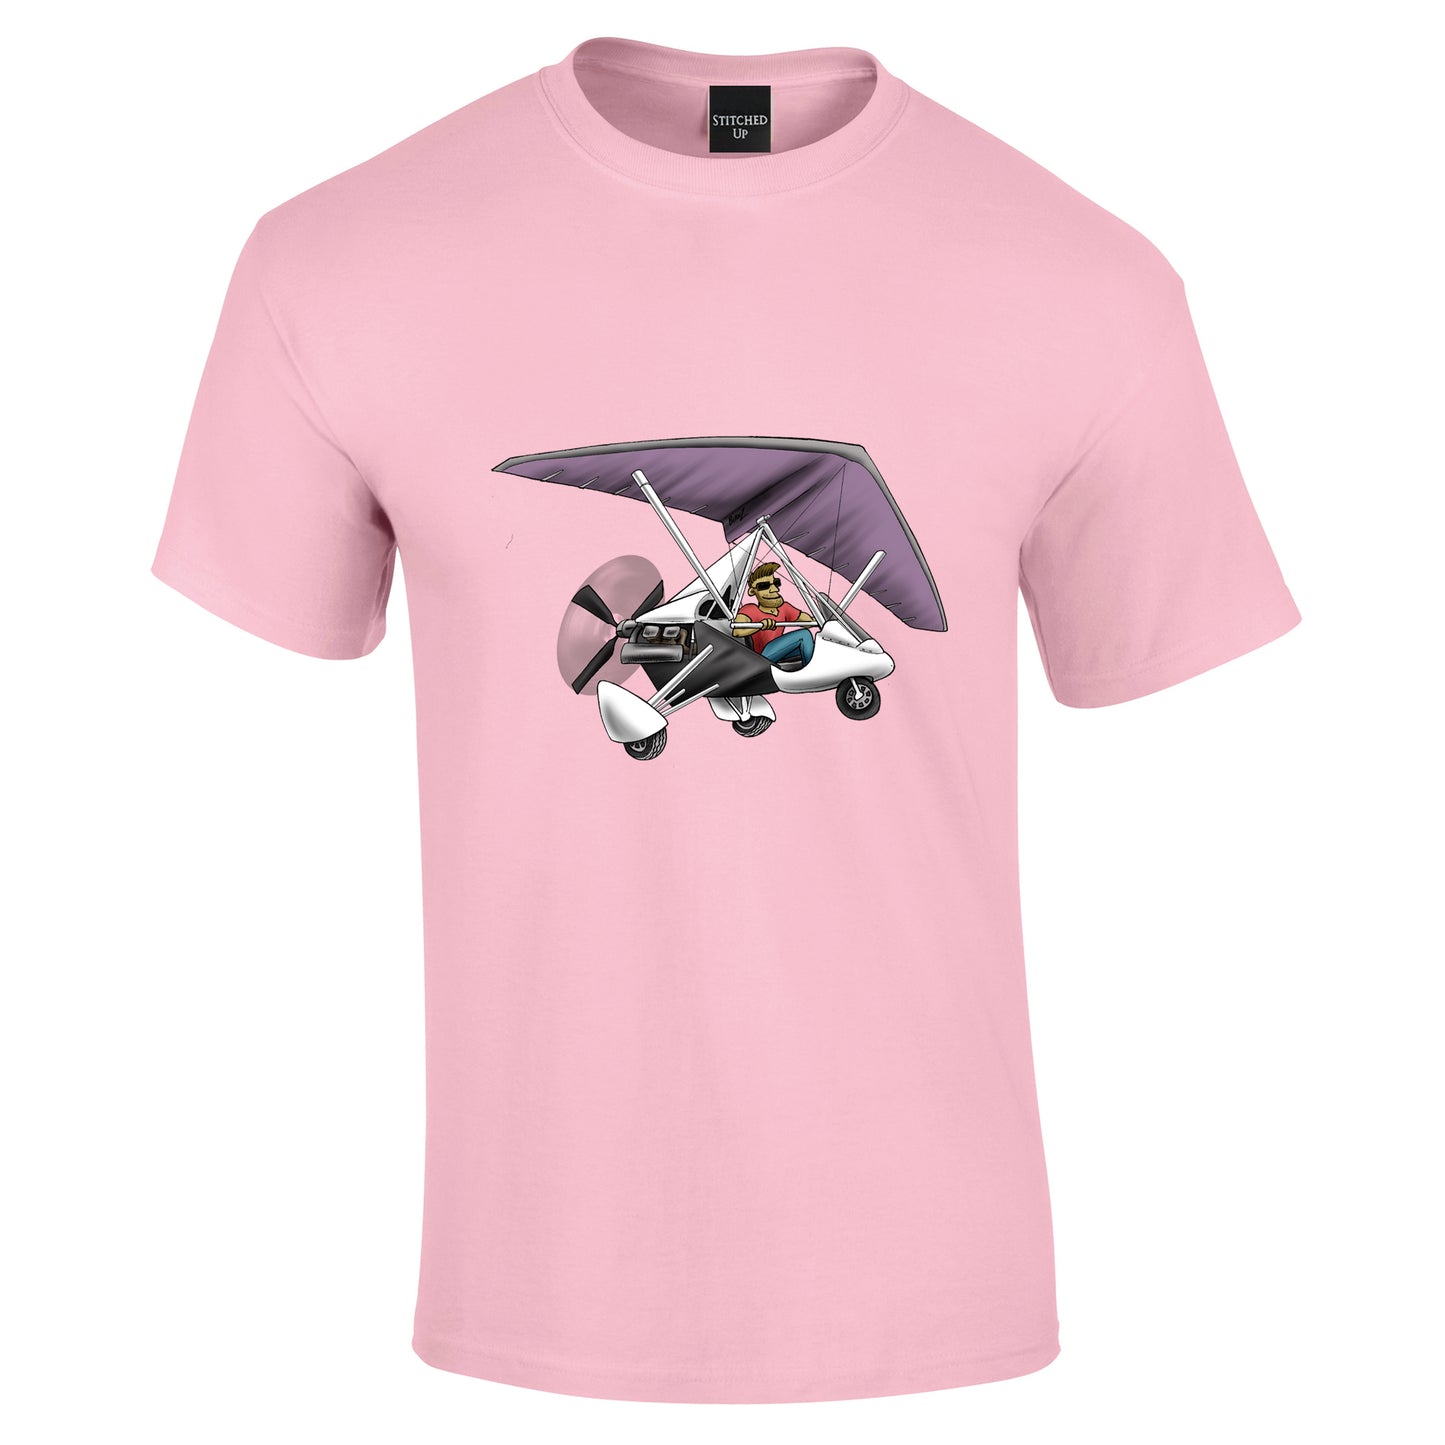 Flexwing Microlight T-Shirt